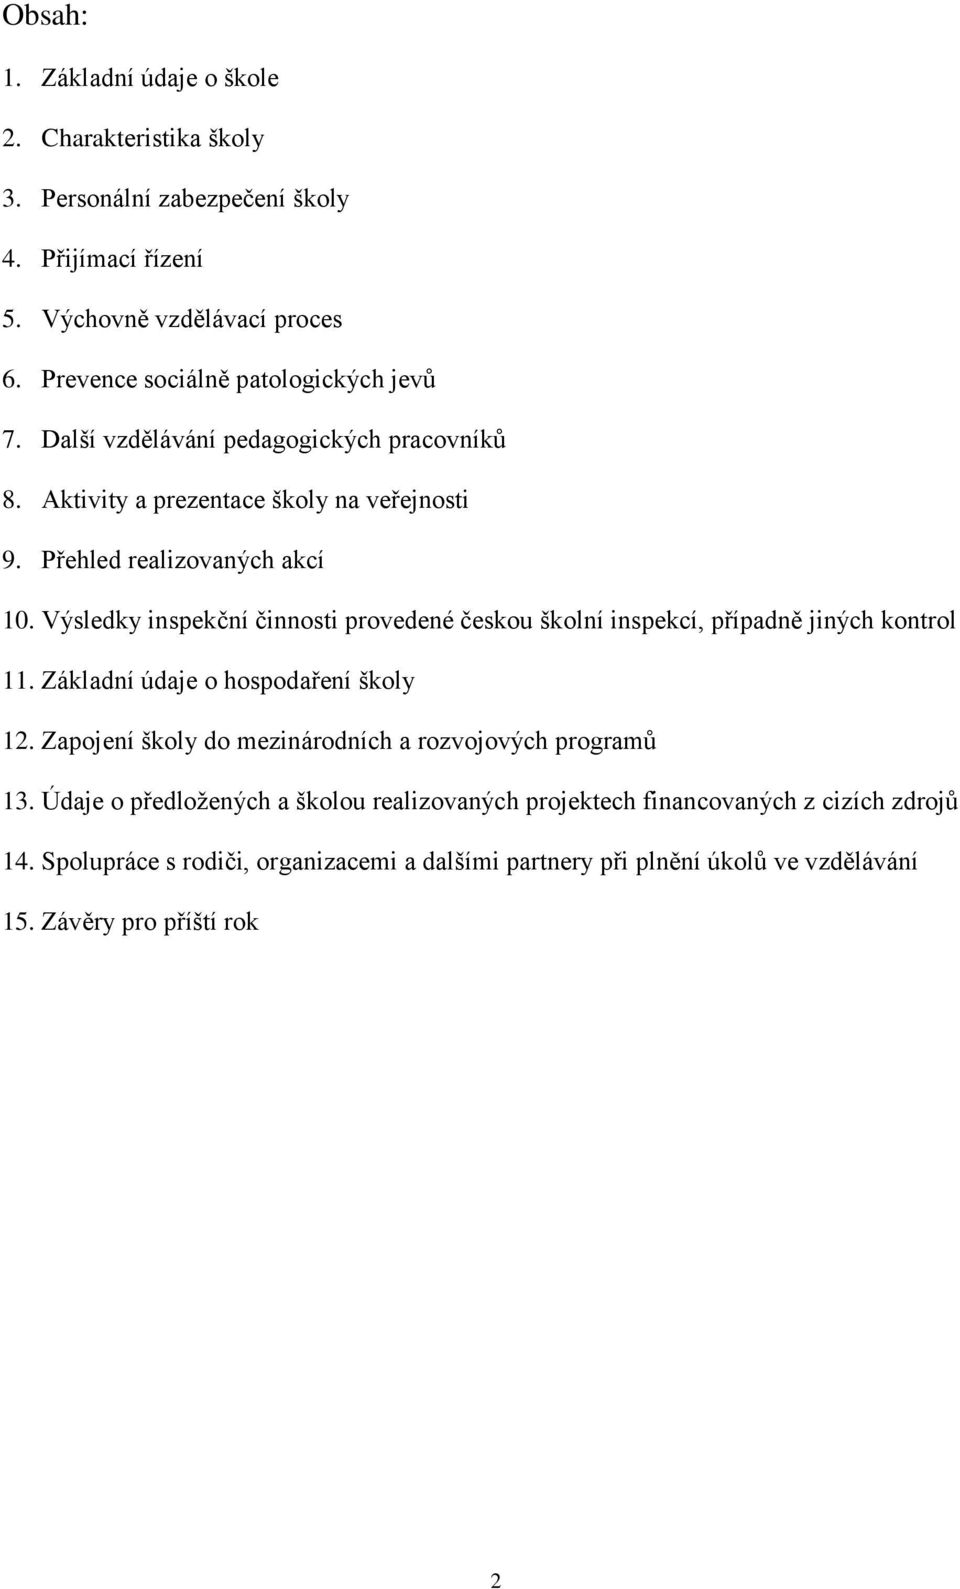 Výsledky inspekční činnosti provedené českou školní inspekcí, případně jiných kontrol 11. Základní údaje o hospodaření školy 12.